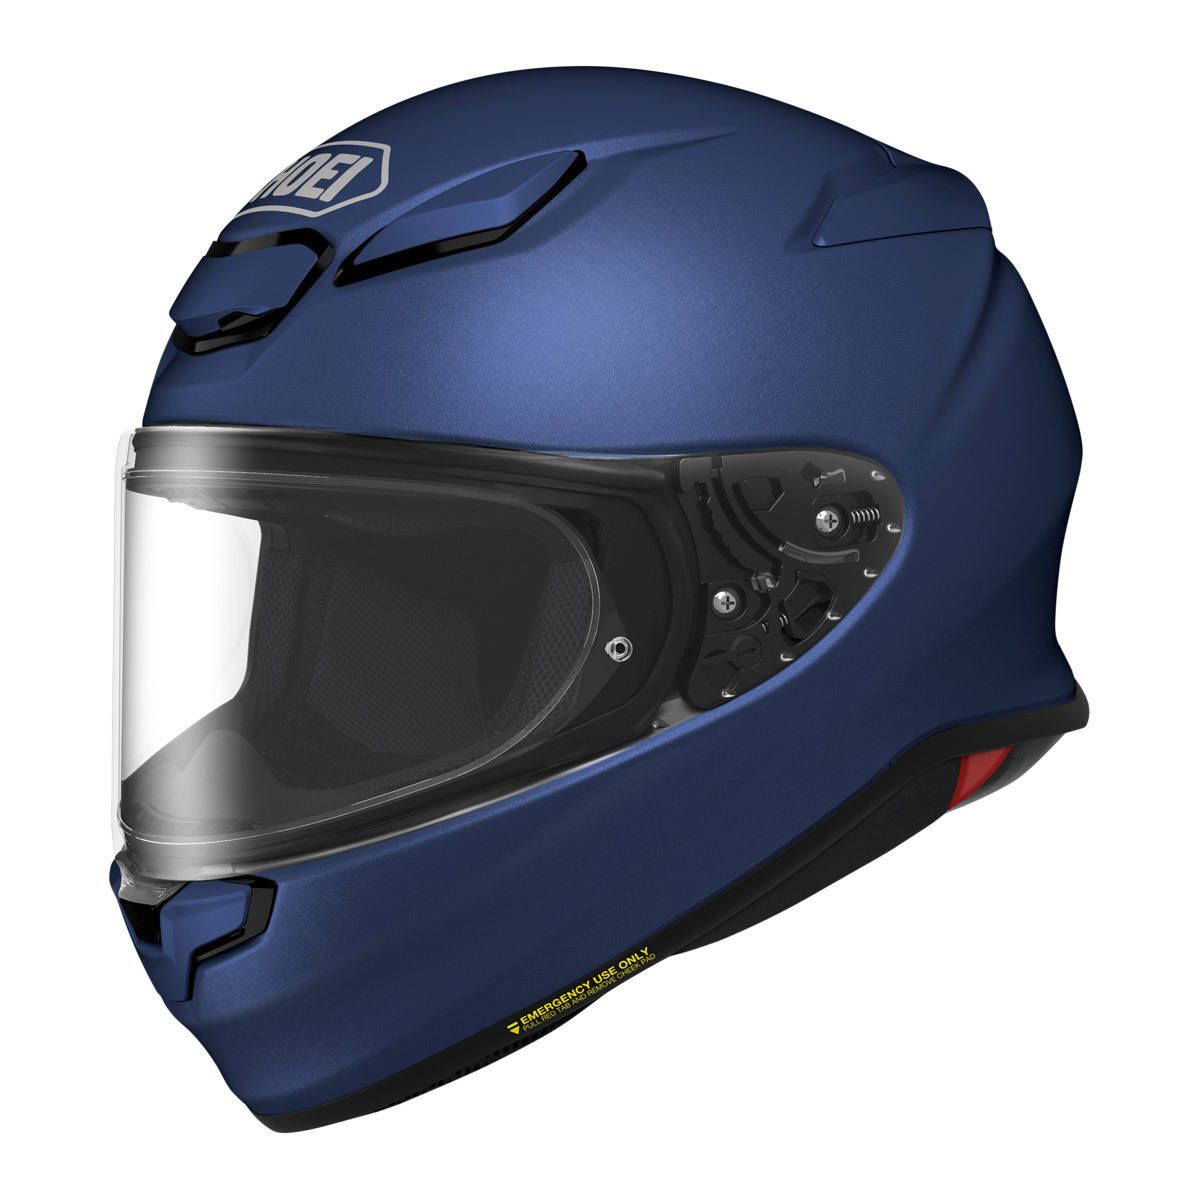 SHOEI RF-1400 Helmet - Matte Blue Metallic